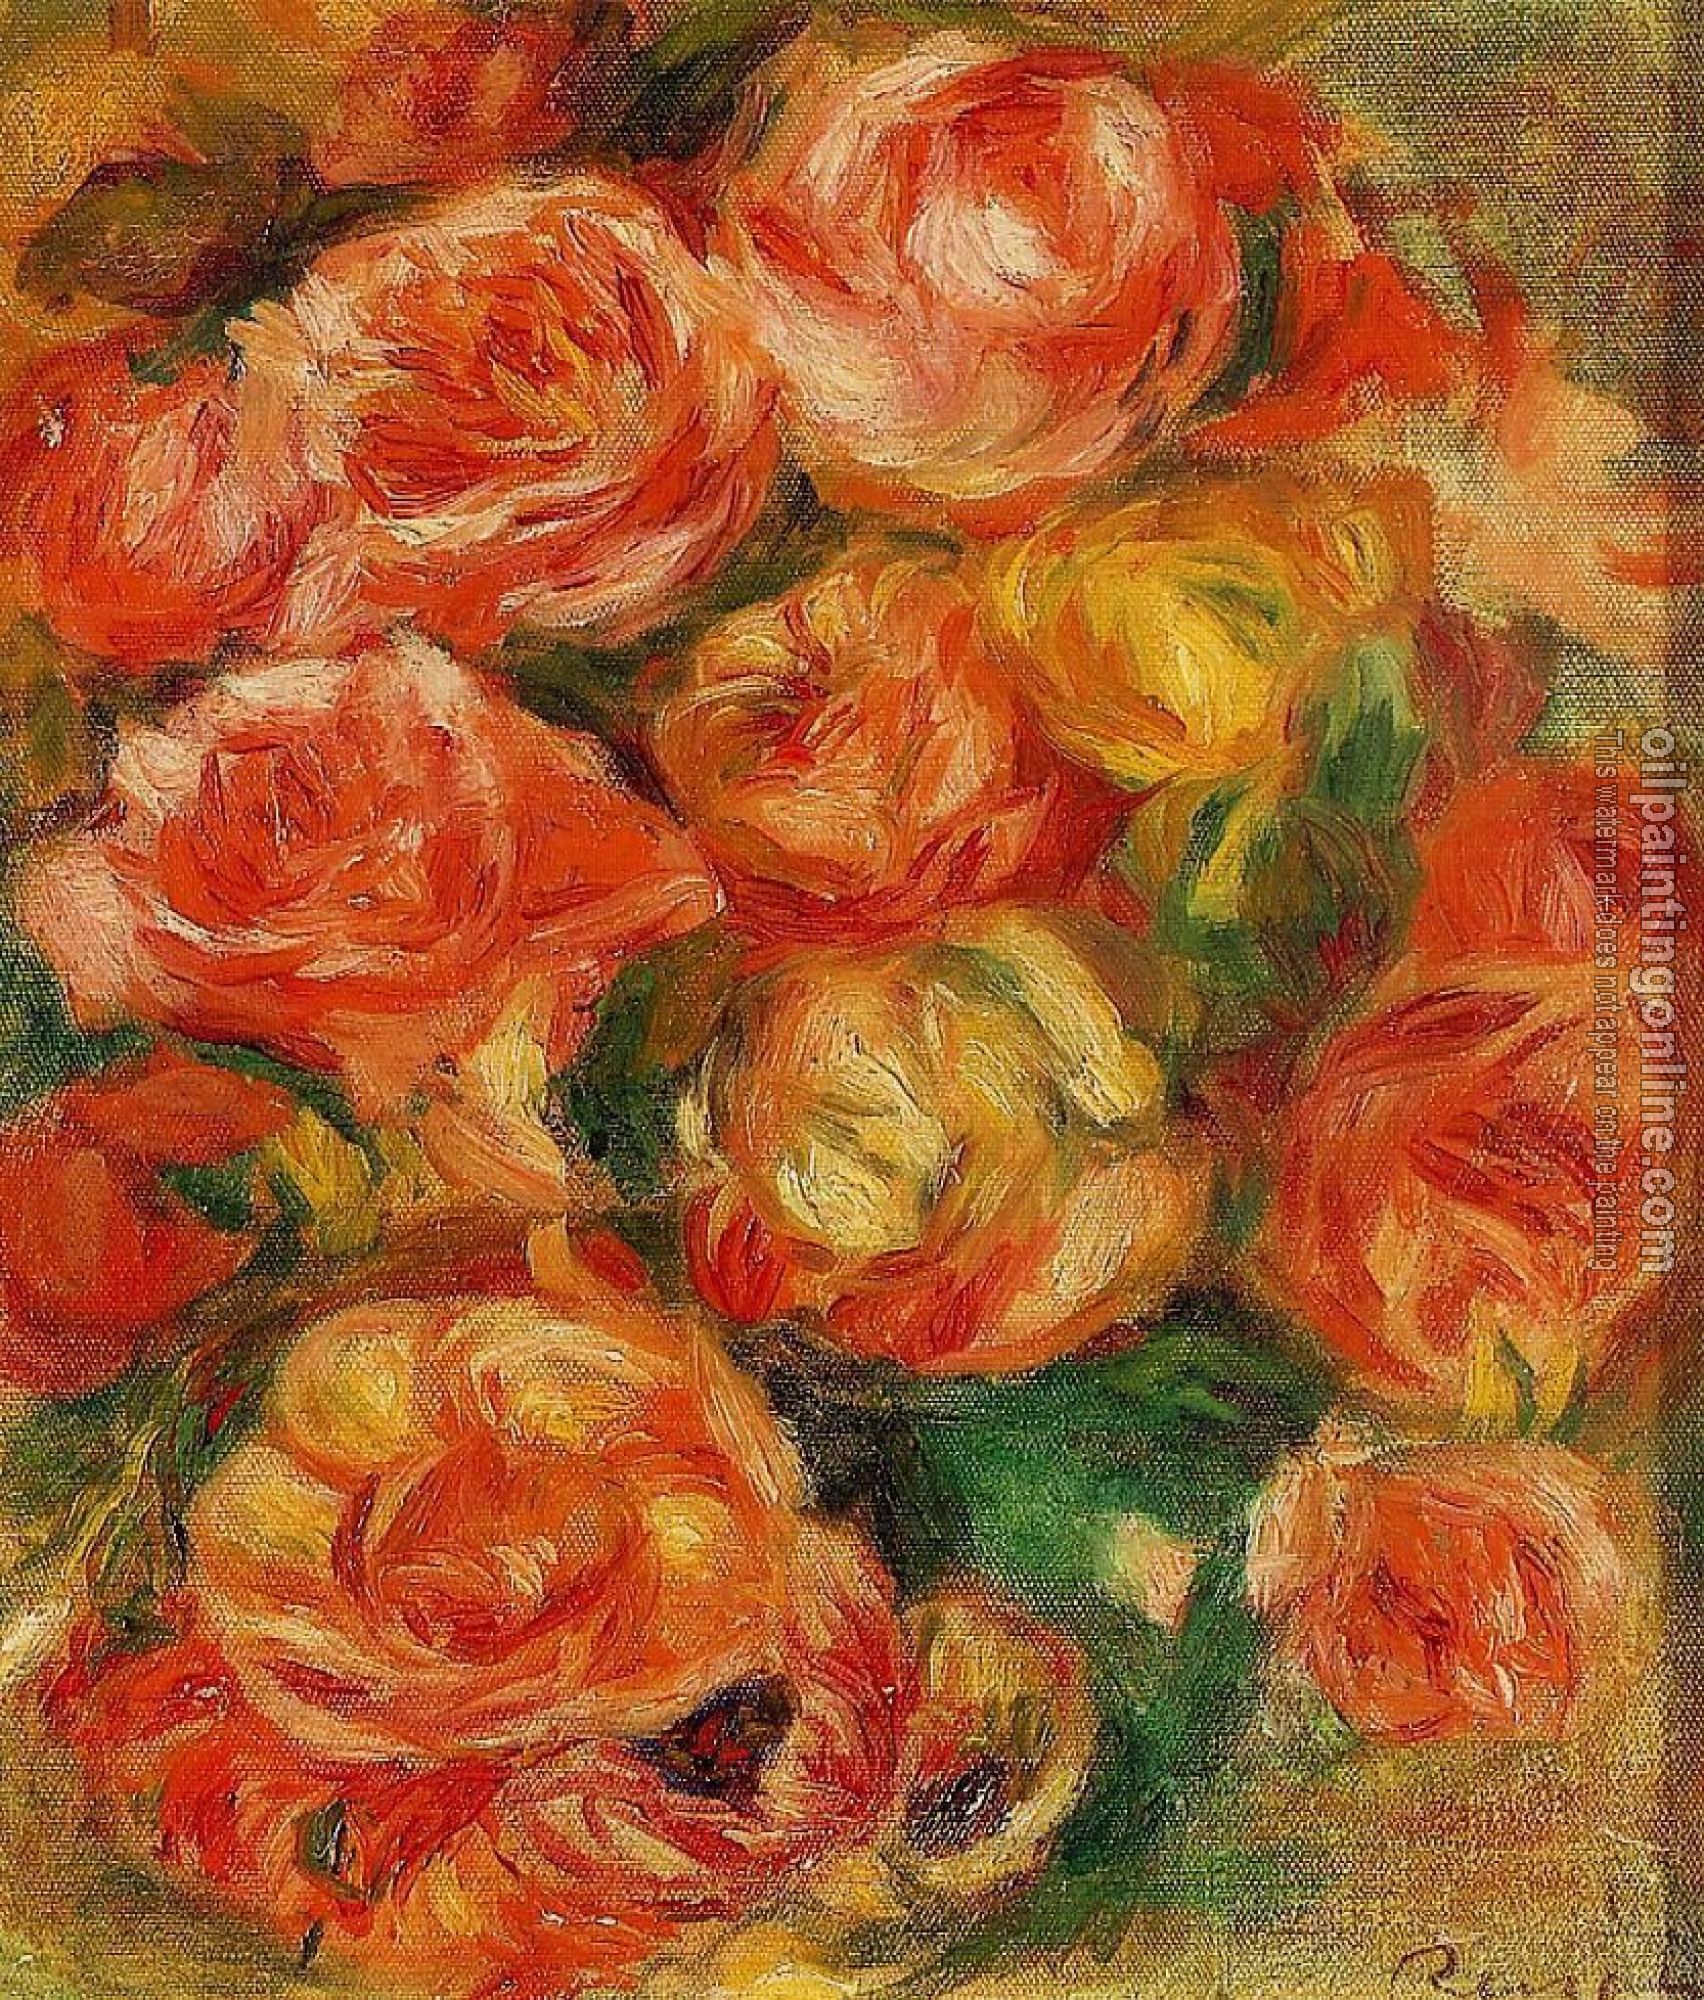 Renoir, Pierre Auguste - A Bowlful of Roses